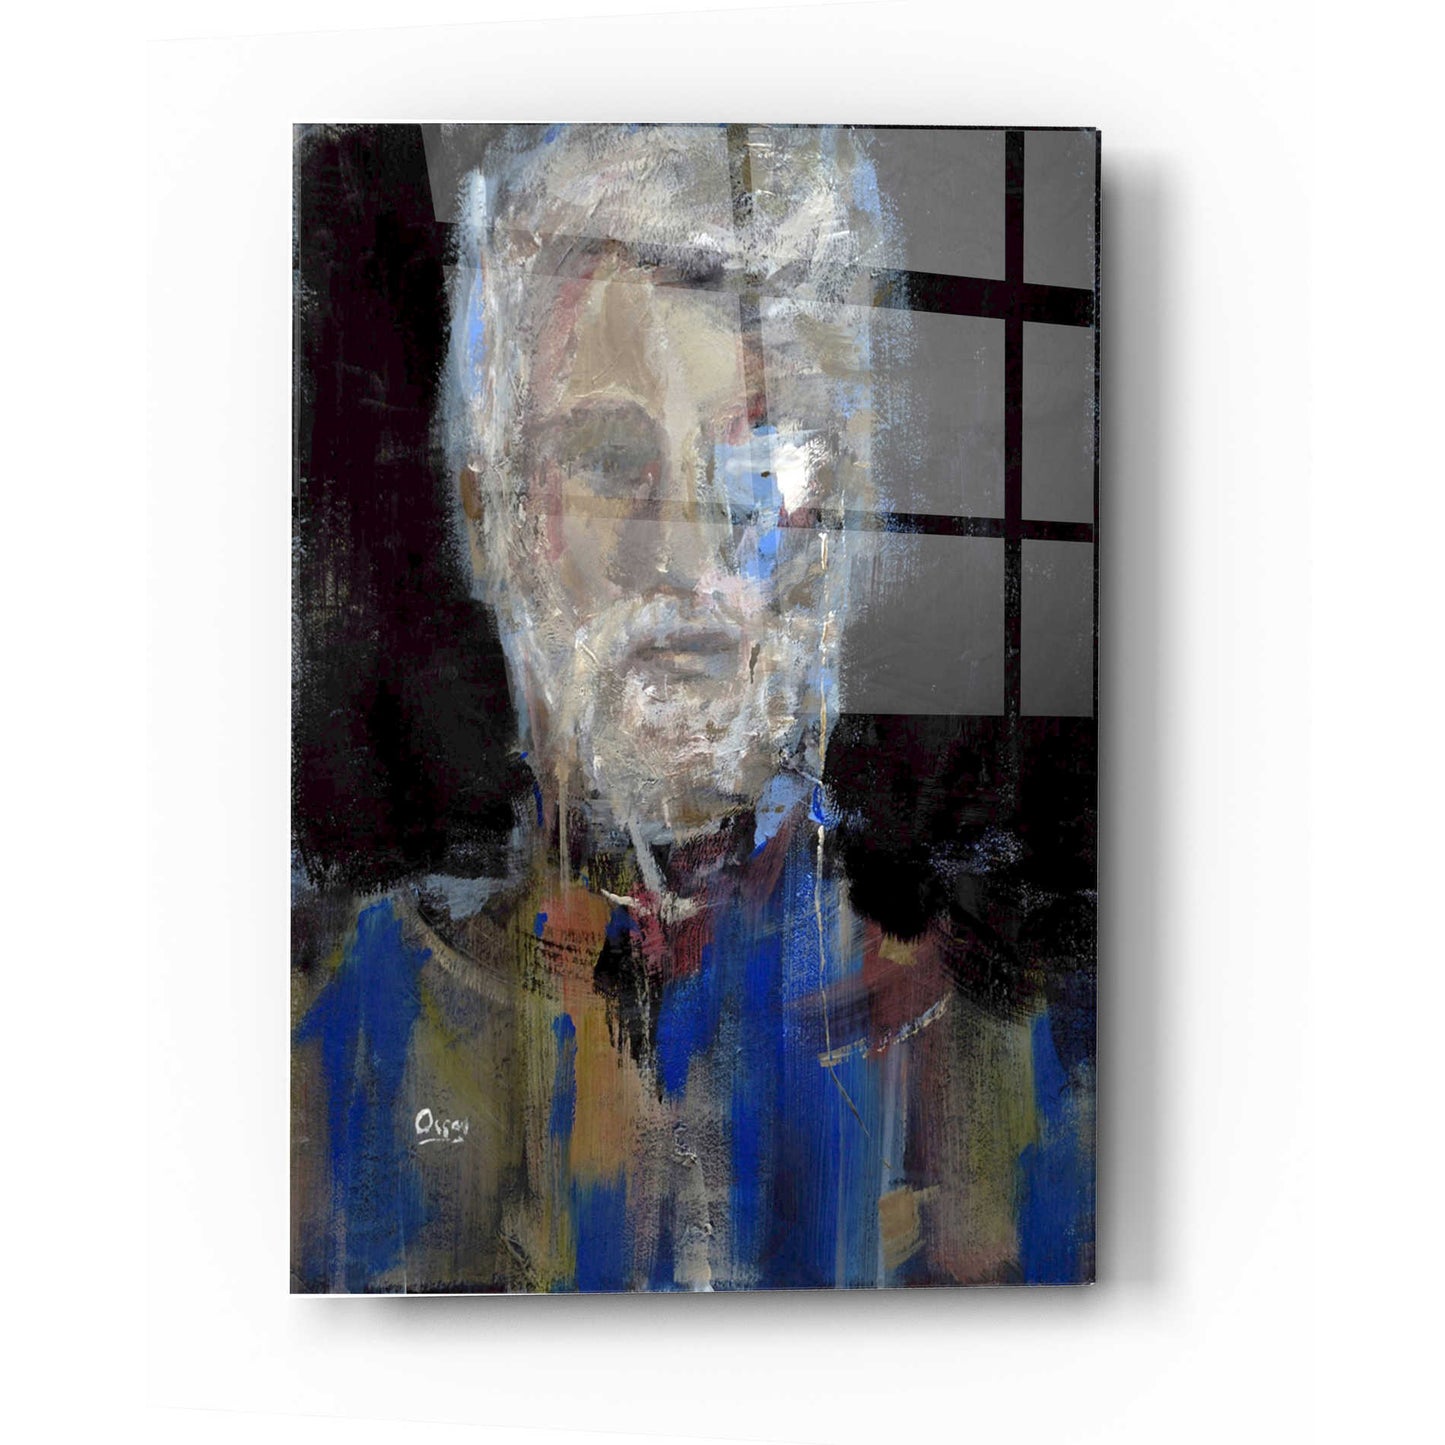 Epic Art 'Portrait 3' by Oscar Alvarez Pardo, Acrylic Glass Wall Art,12x16